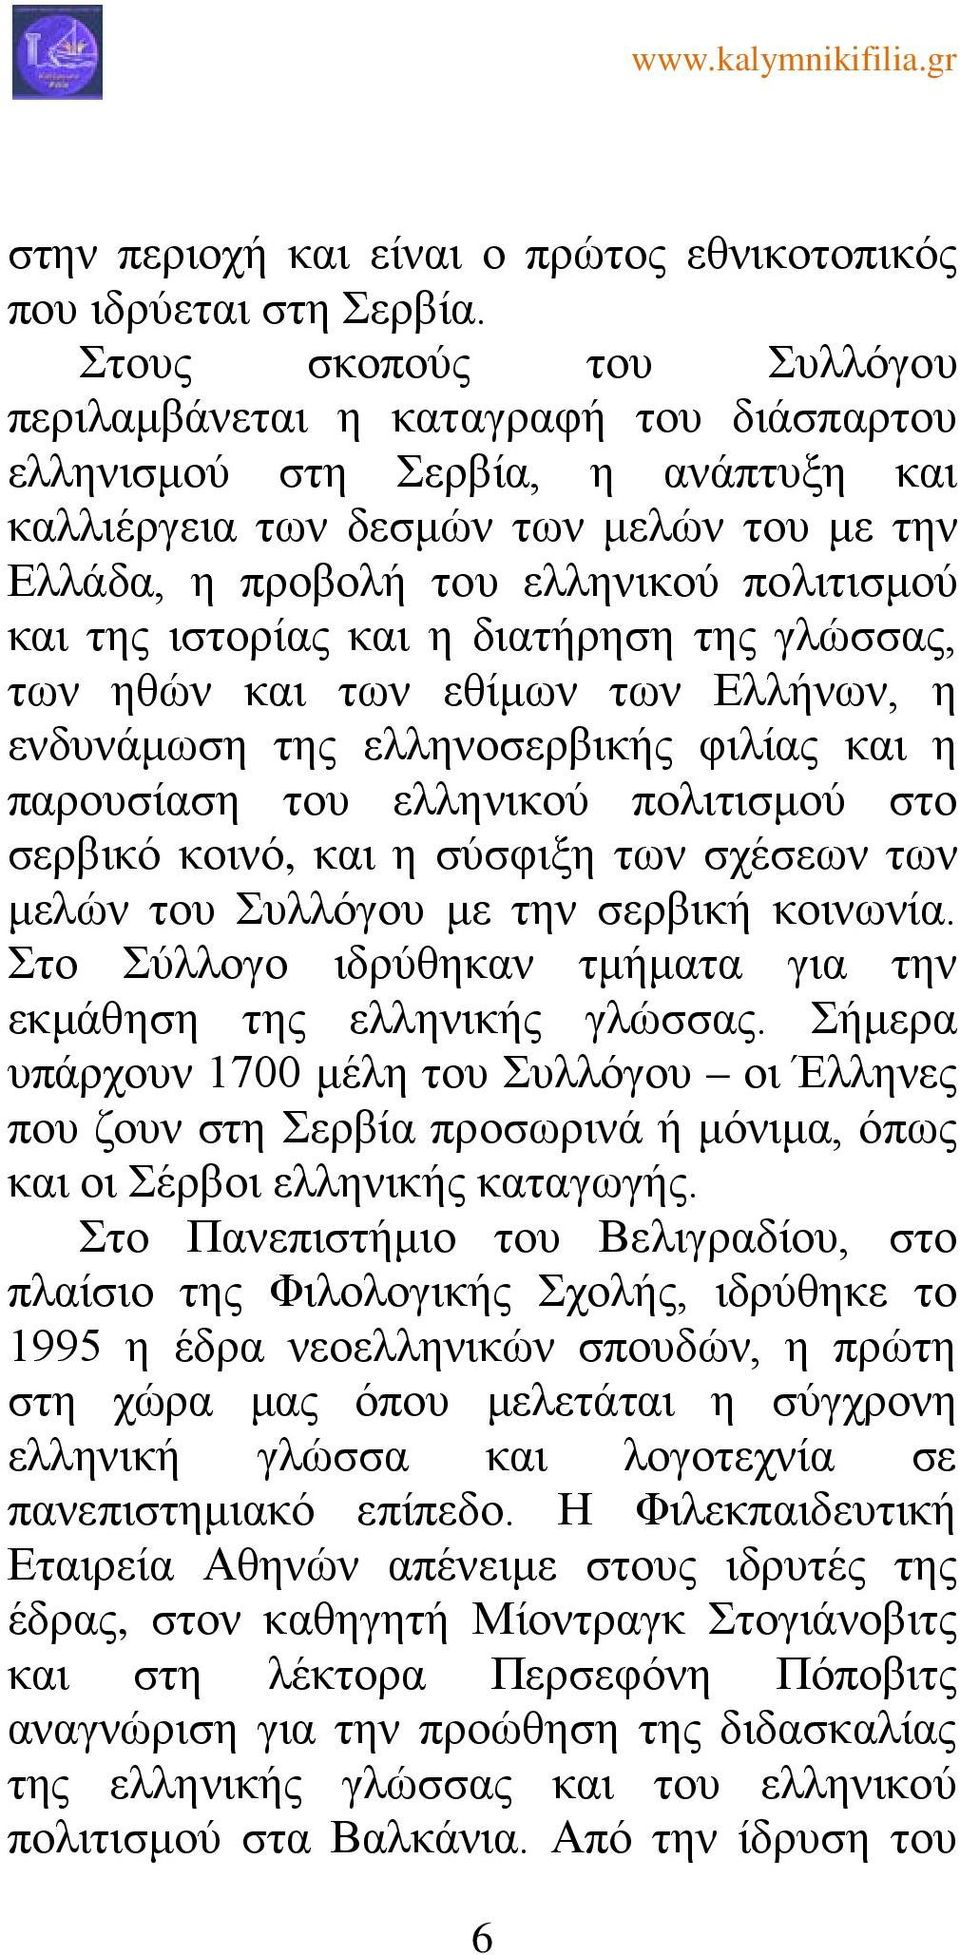 της ιστορίας και η διατήρηση της γλώσσας, των ηθών και των εθίμων των Ελλήνων, η ενδυνάμωση της ελληνοσερβικής φιλίας και η παρουσίαση του ελληνικού πολιτισμού στο σερβικό κοινό, και η σύσφιξη των